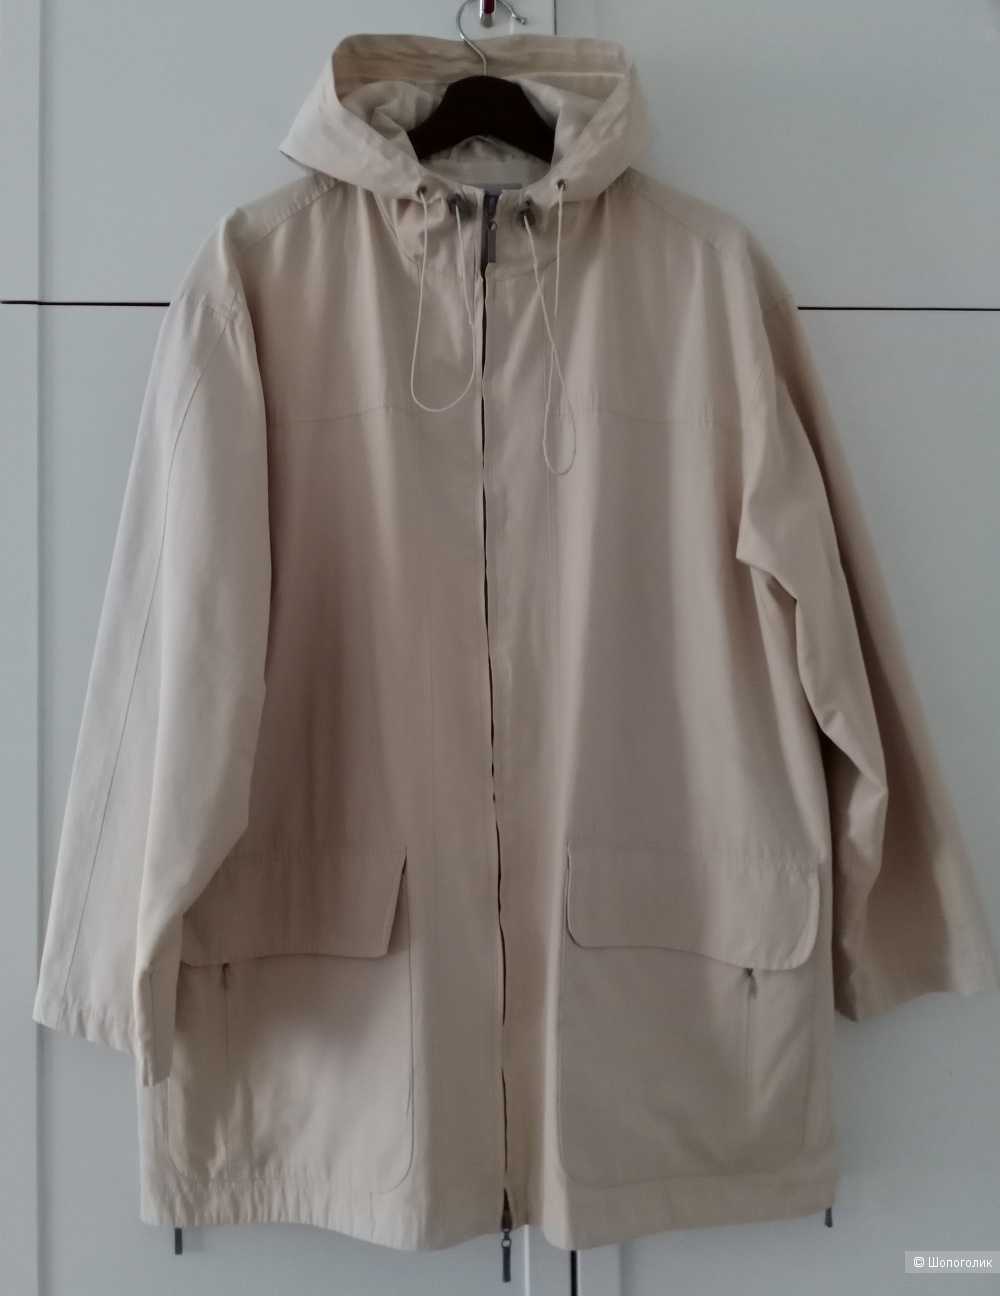 Куртка, ветровка VuniC,  50-52 размер